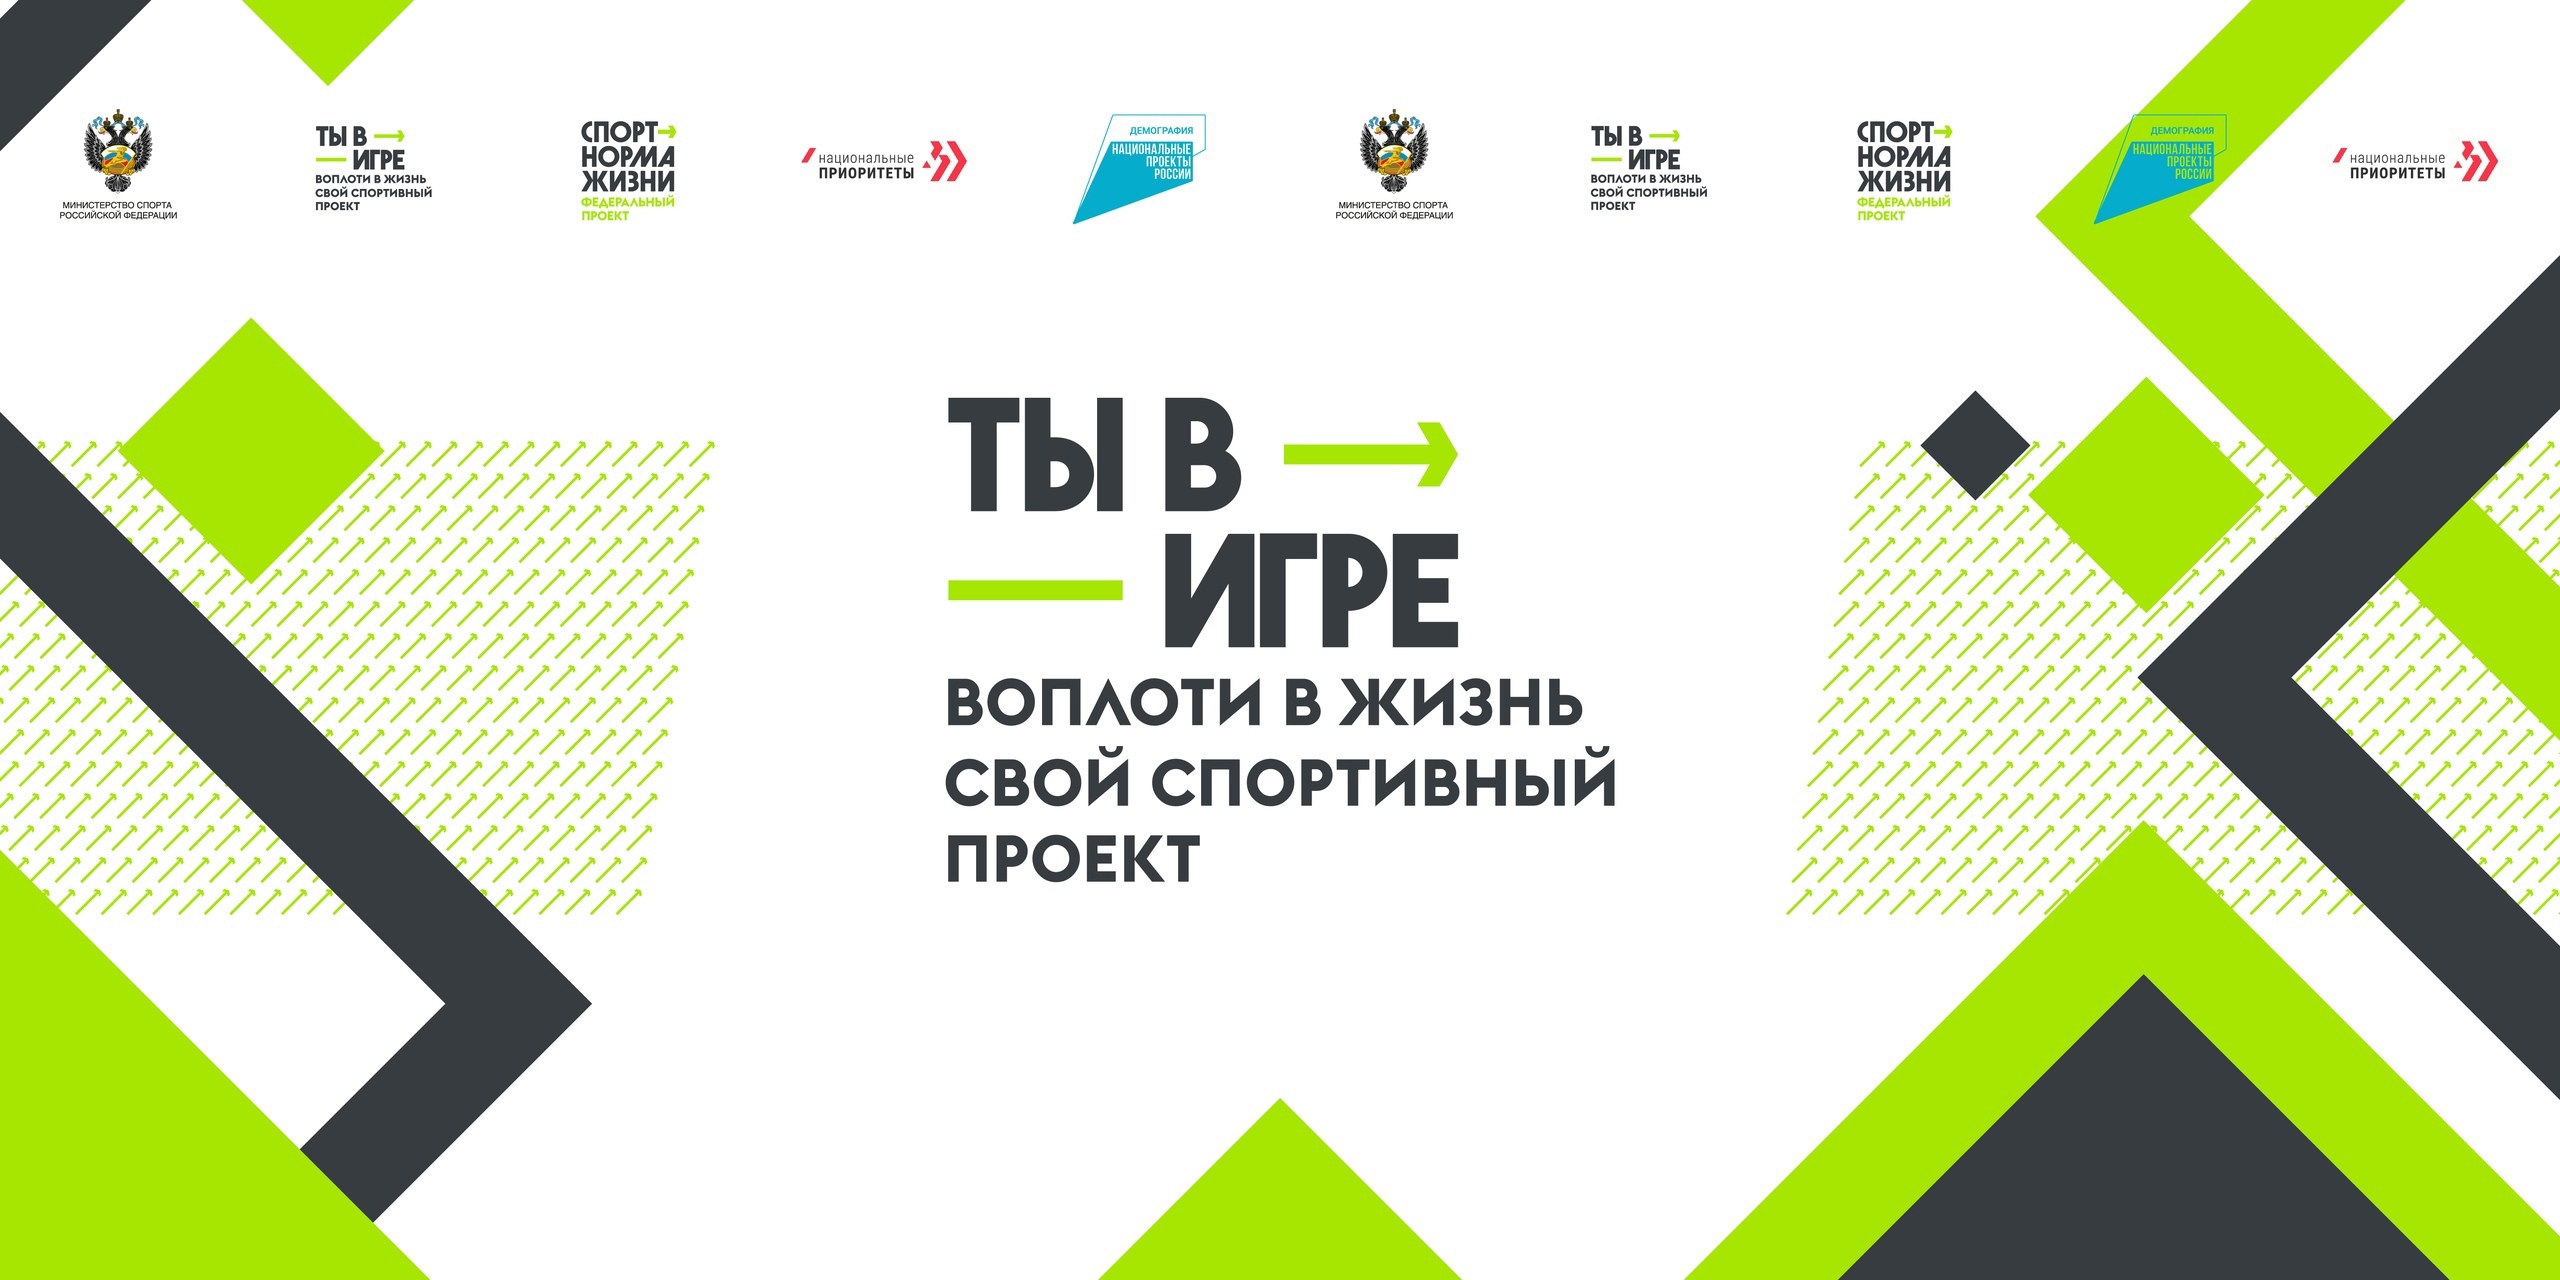 17 проектов Ярославской области участвуют в конкурсе «Ты в игре»